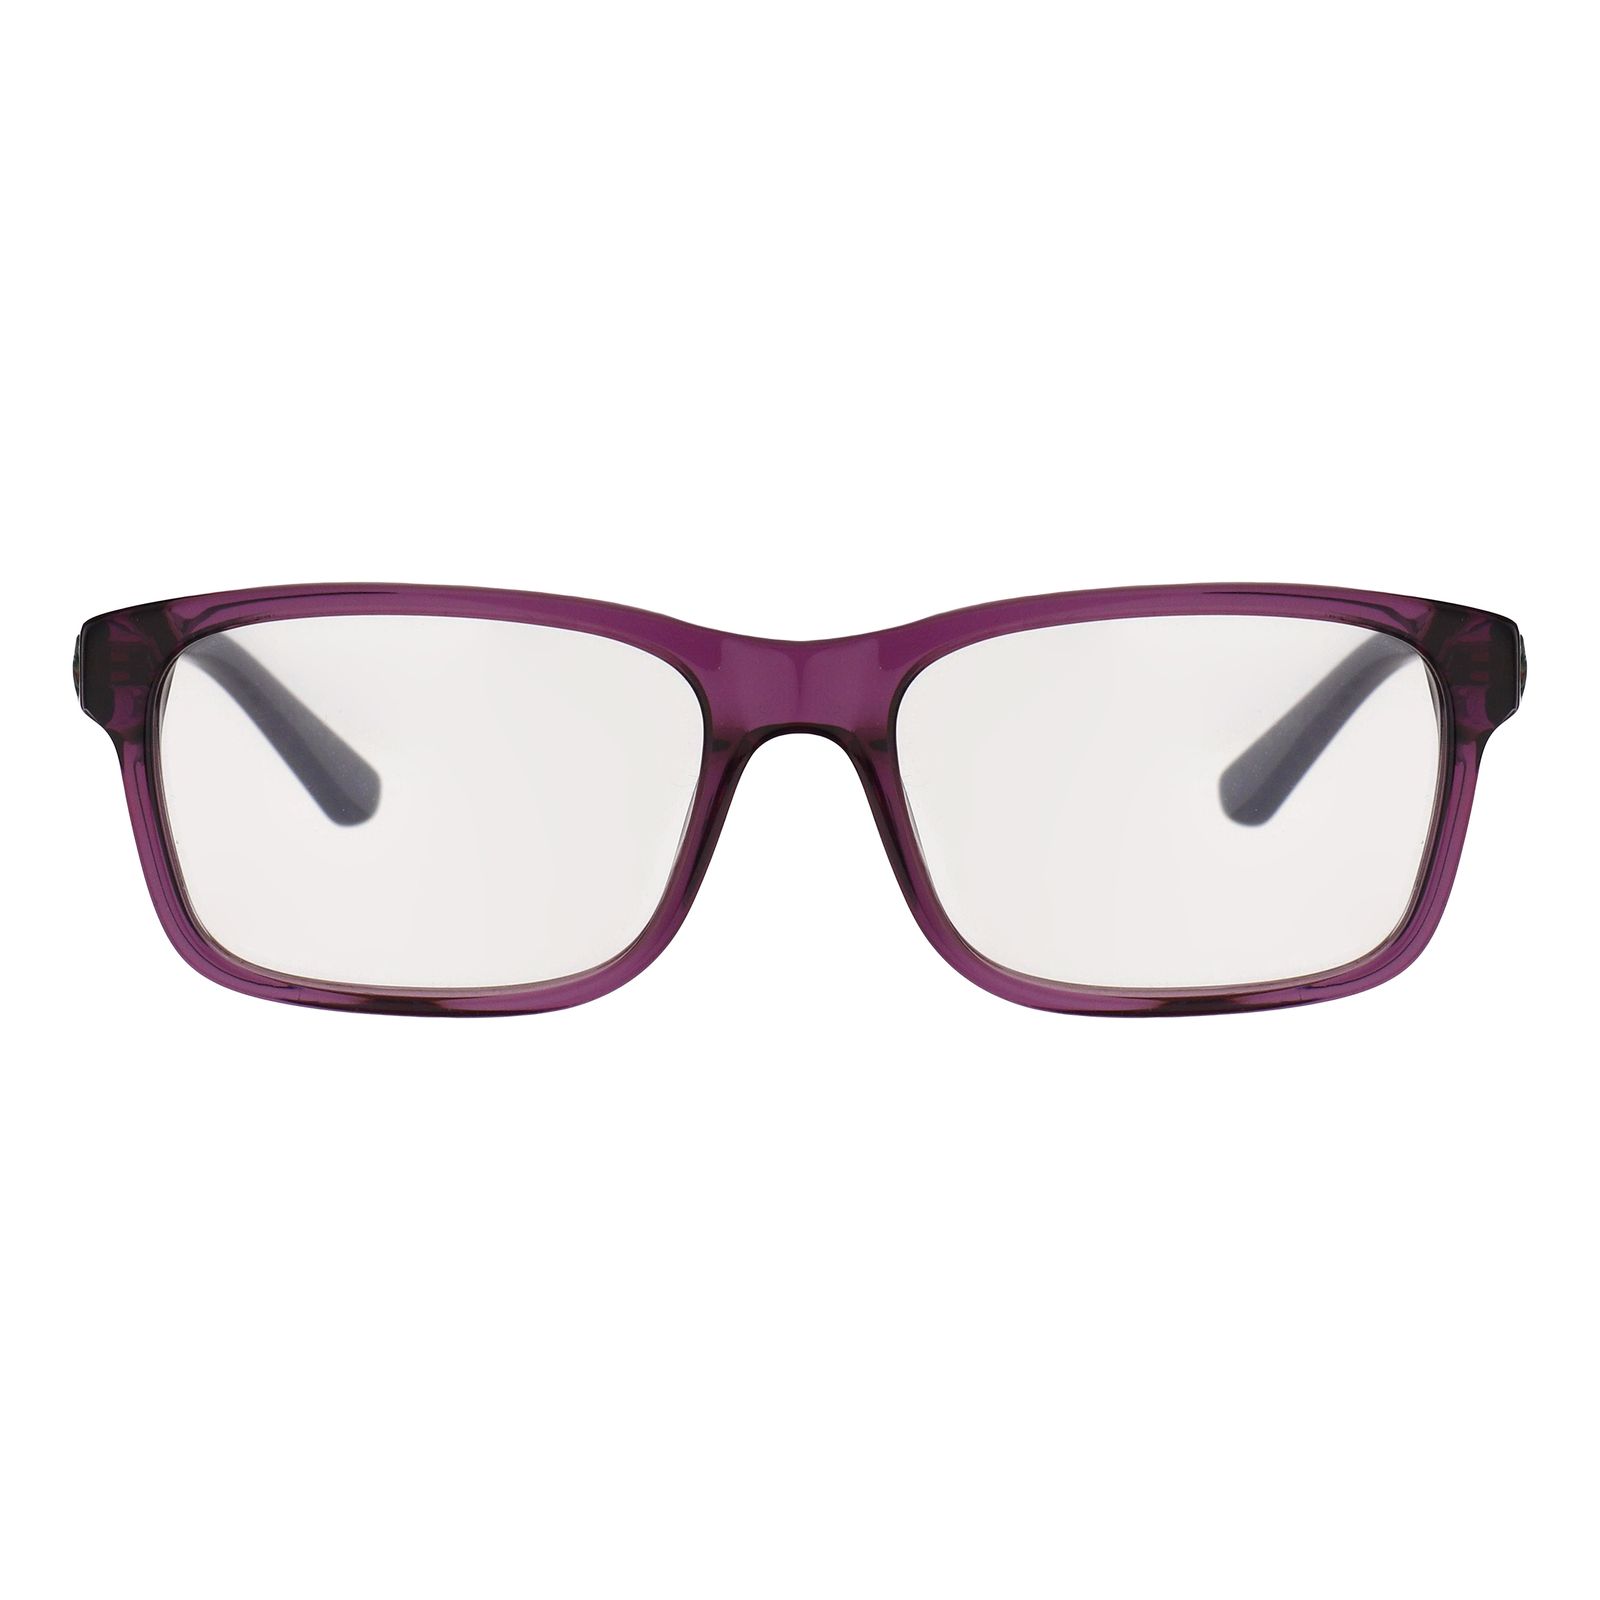 فریم عینک طبی لاگوست مدل 3612-514 -  - 1